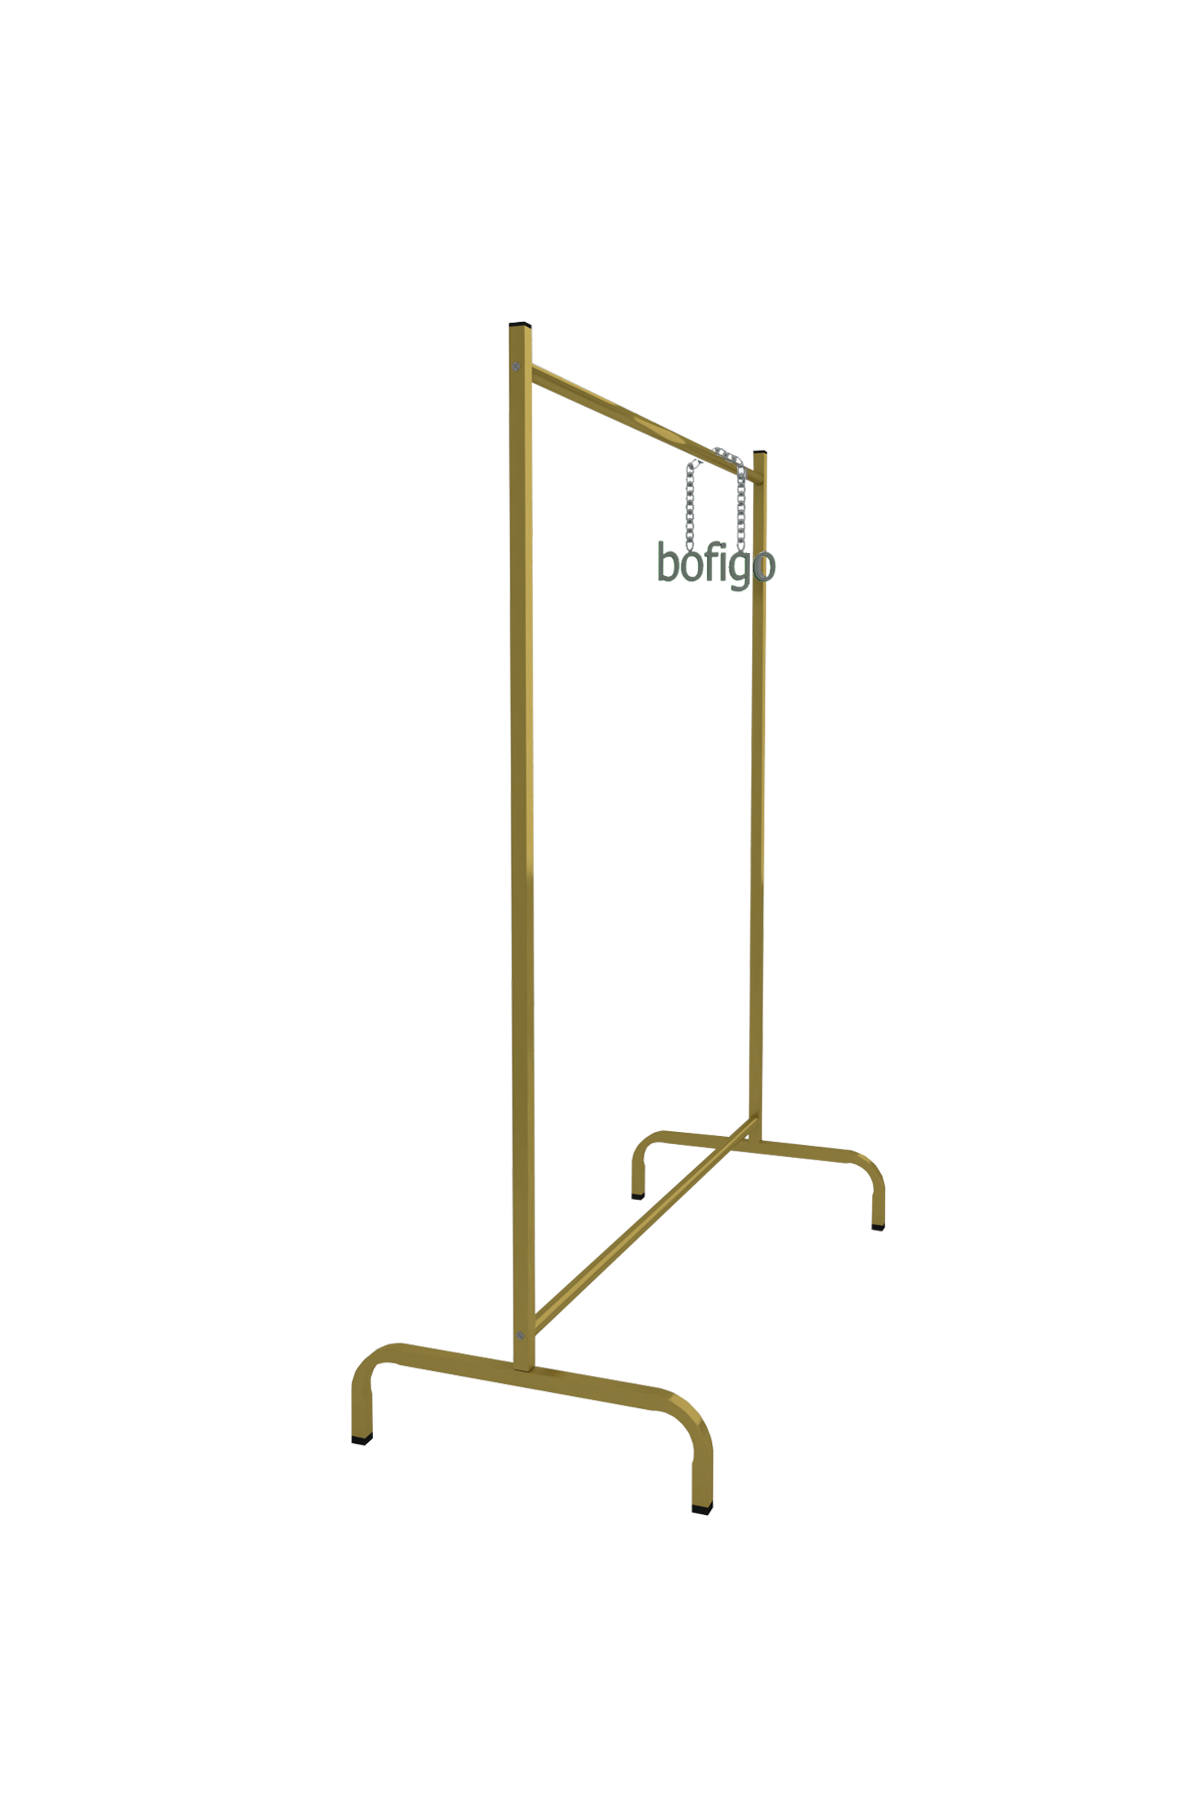 Bofigo Garment Hanger Pedestal Hanger Clothes Rack Gold